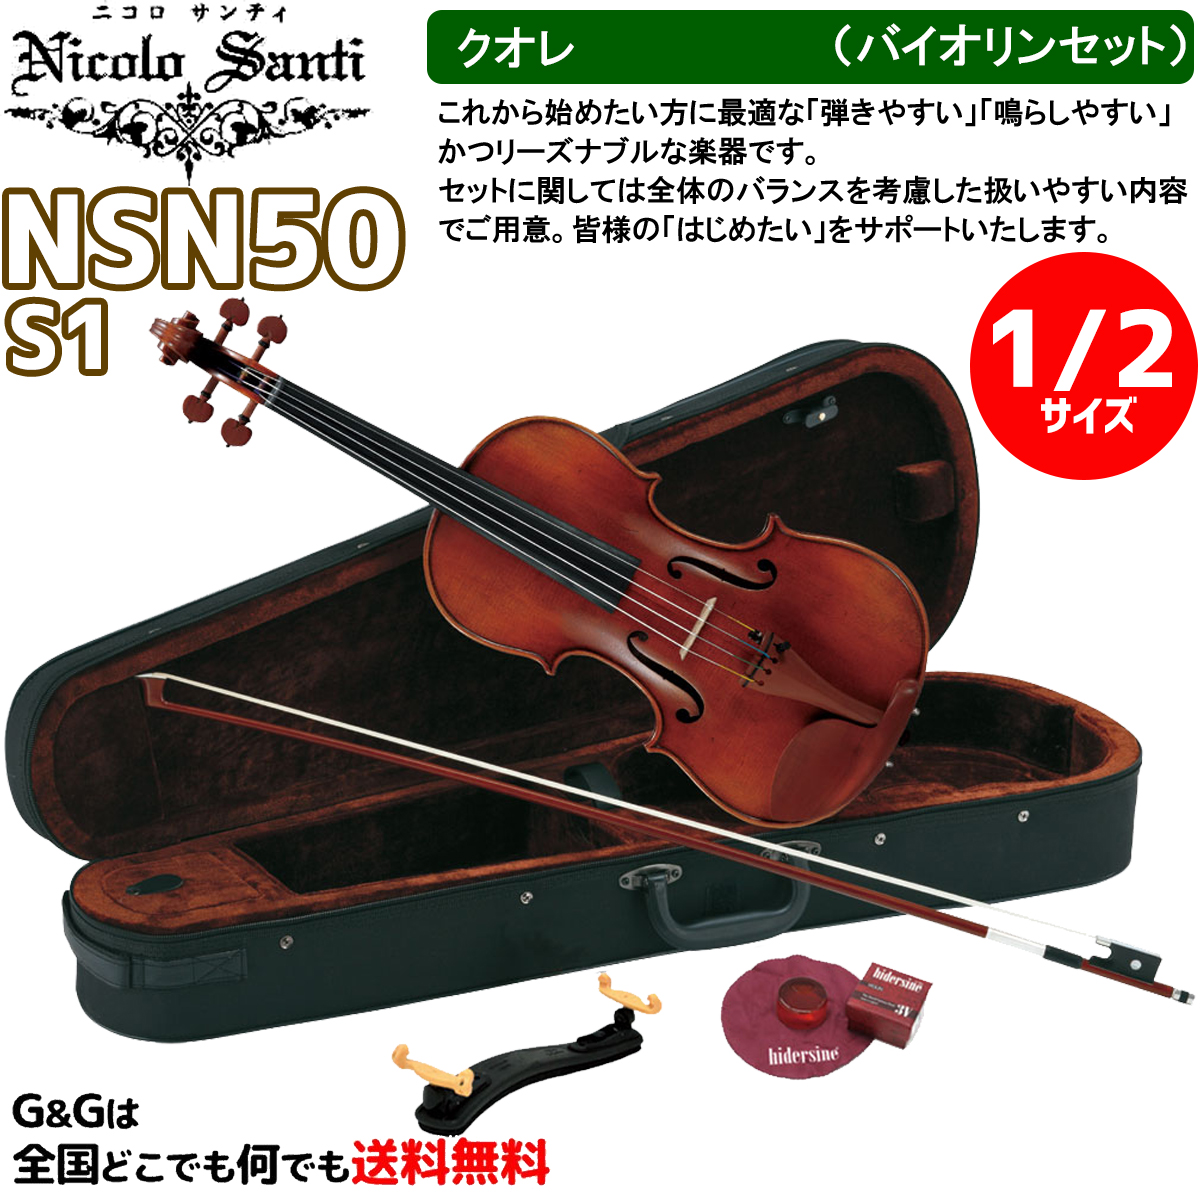 バイオリンセット 2サイズ ニコロ・サンティ クオレ NSN50S1 Nicolo Santi Cuore